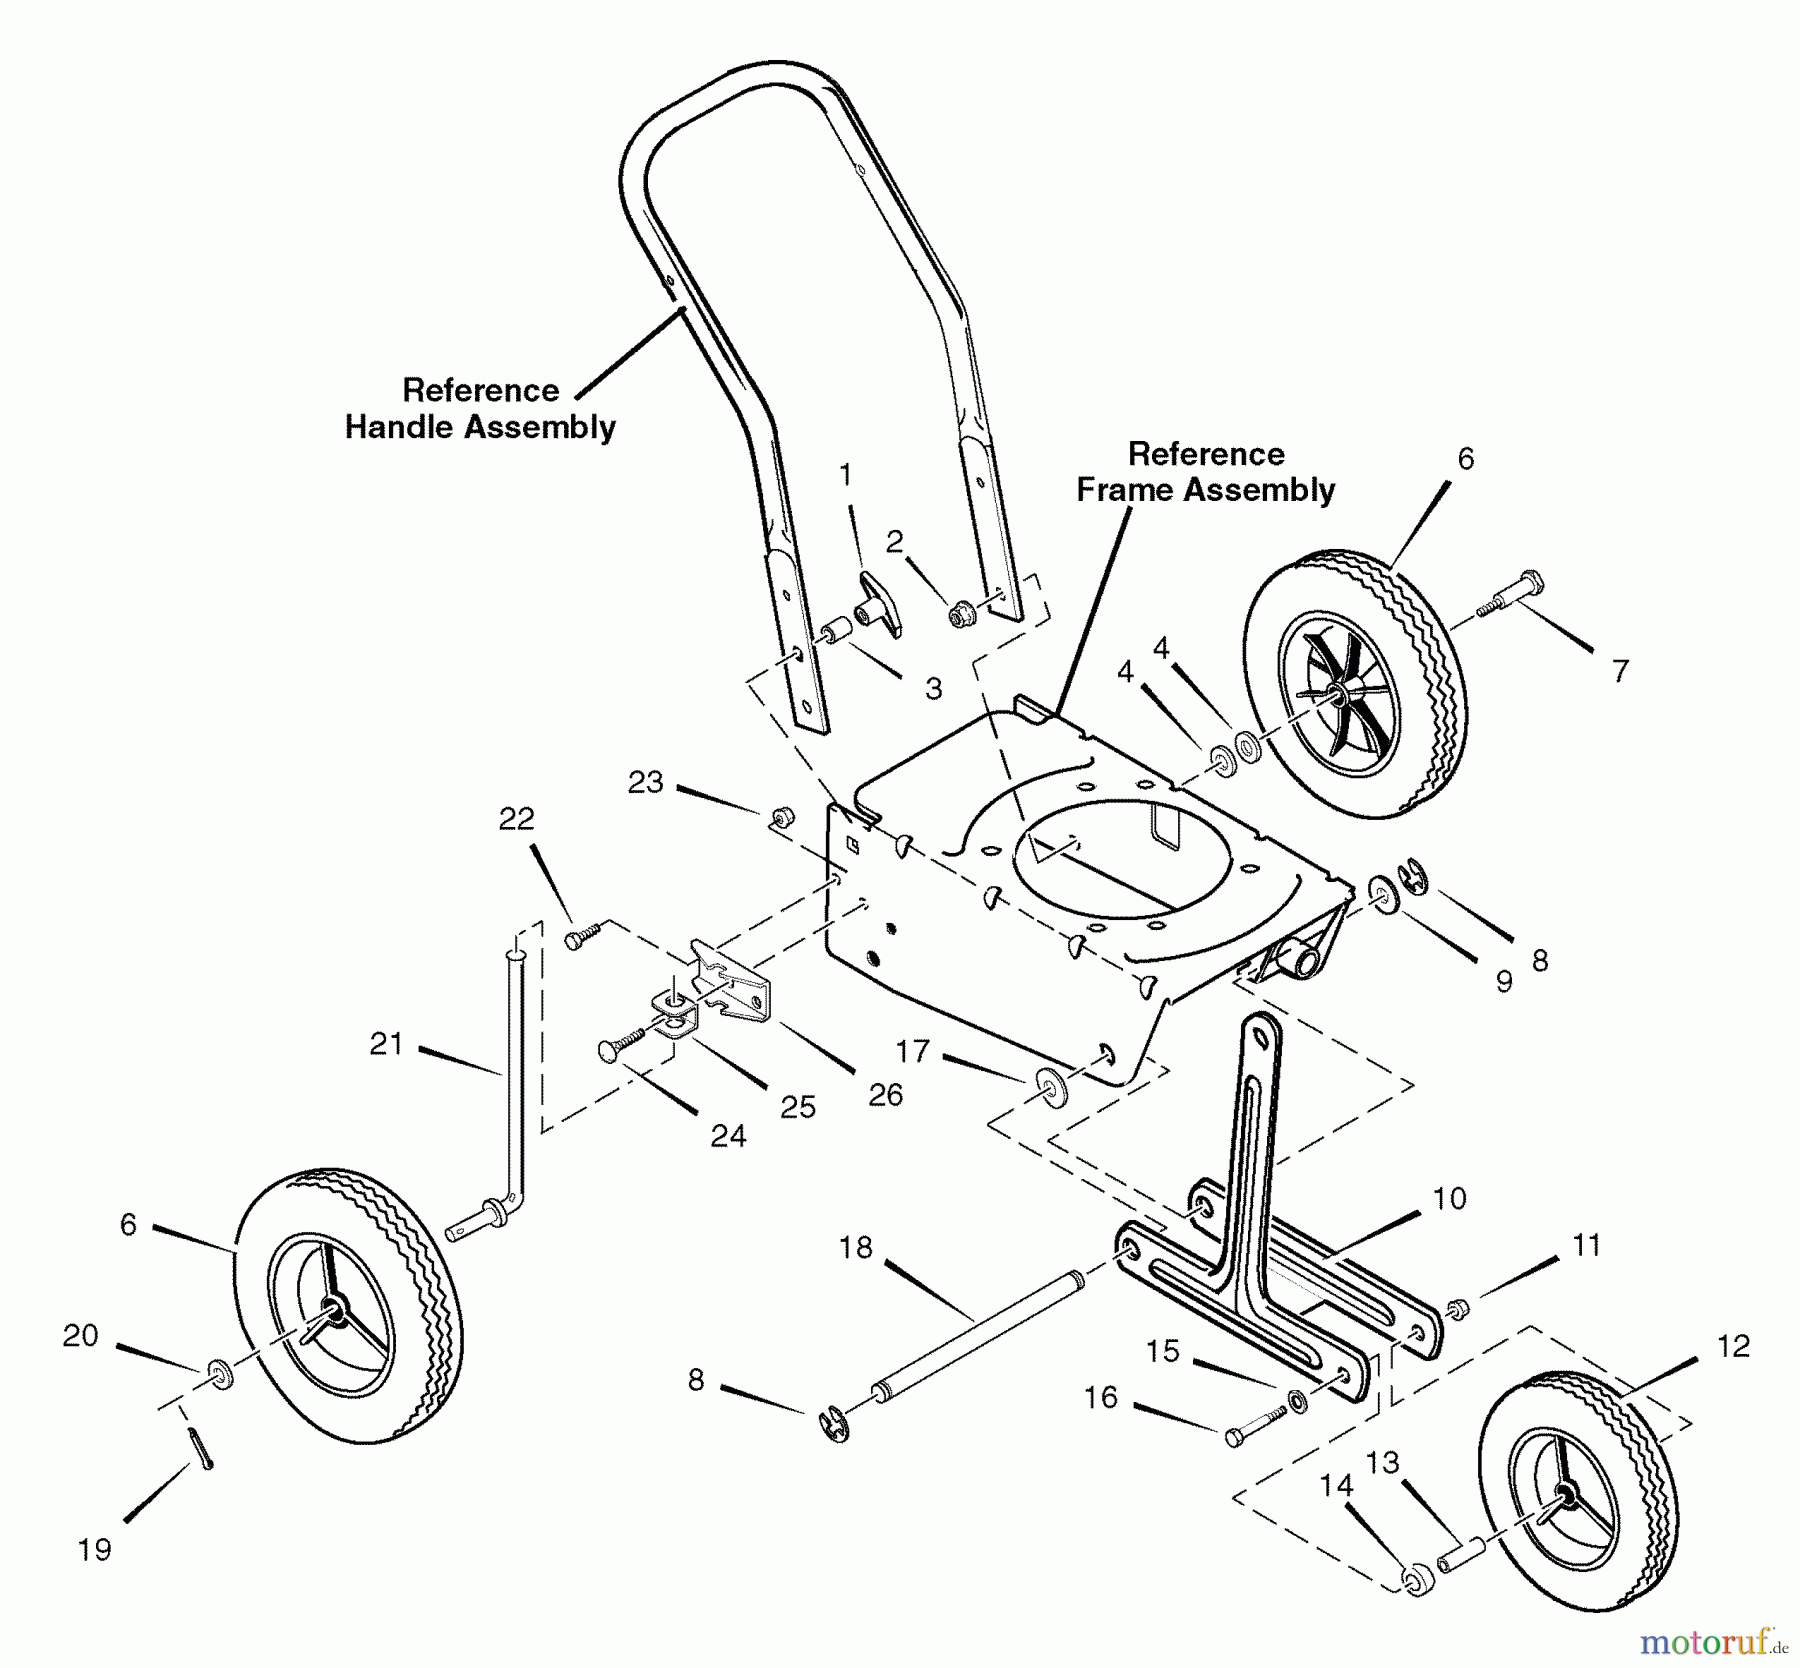  Murray Kantenschneider 536.772350 (77235000NB) - Craftsman Edger (2007) (Sears) Wheel Assembly